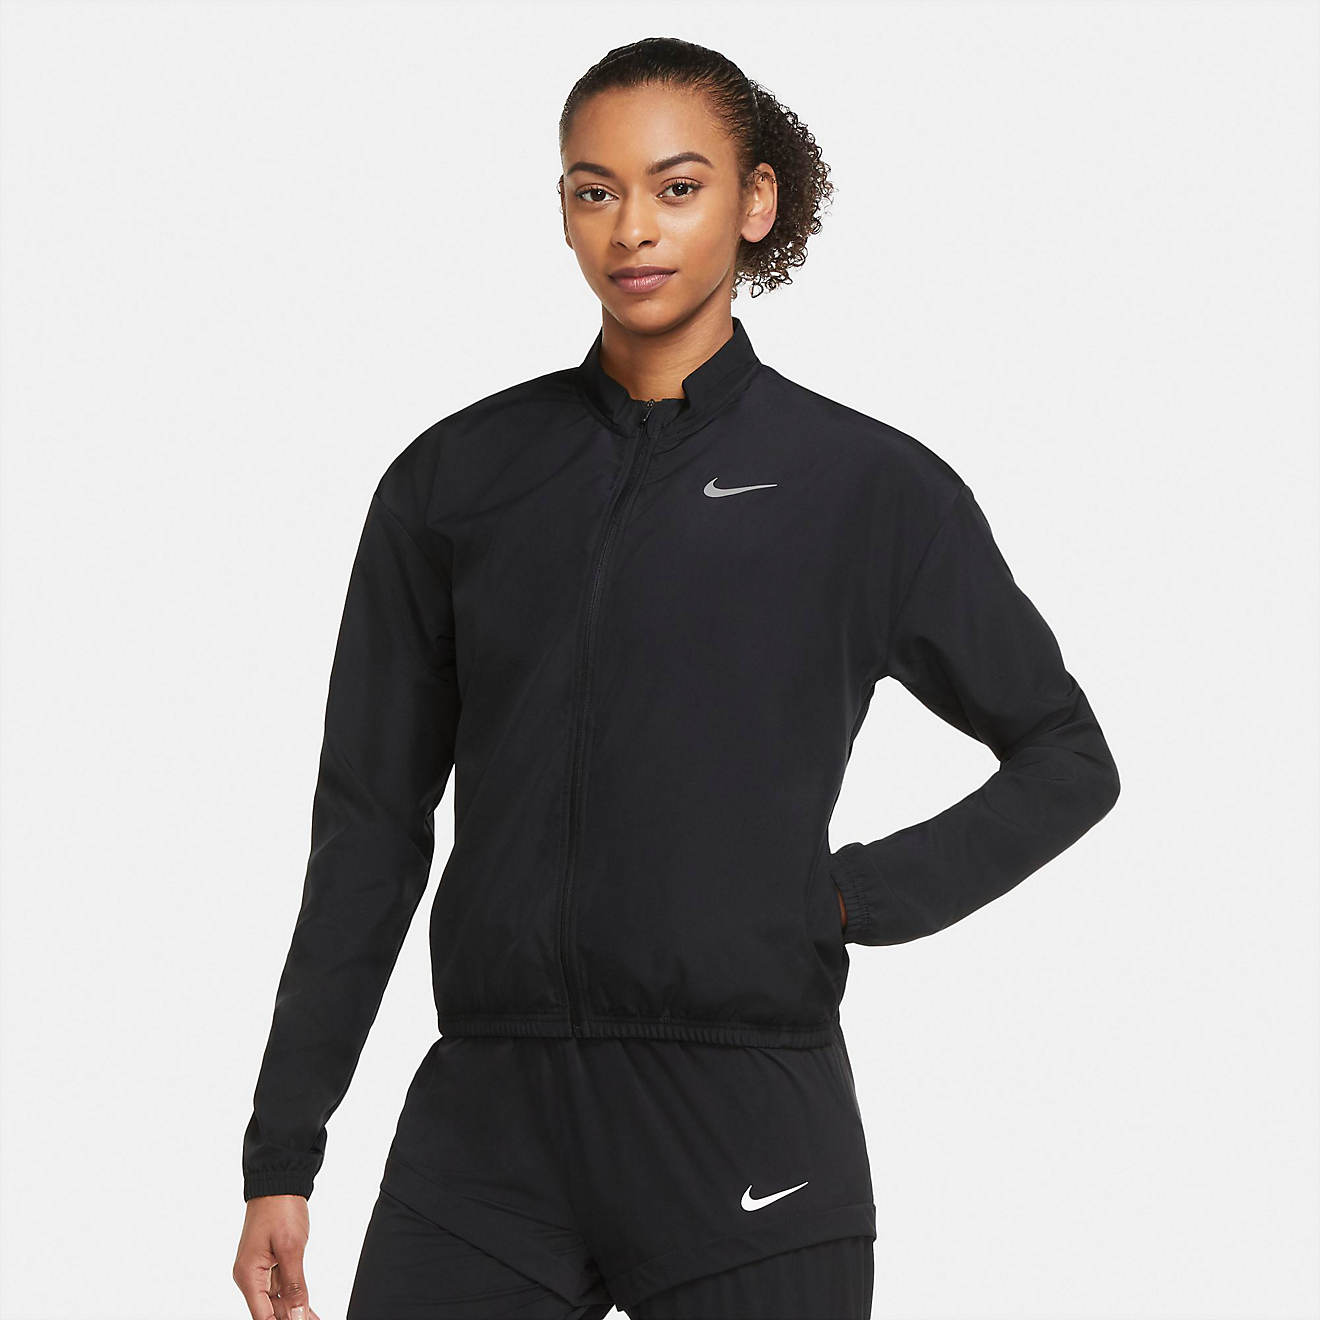 Nike dri fit jacket womens